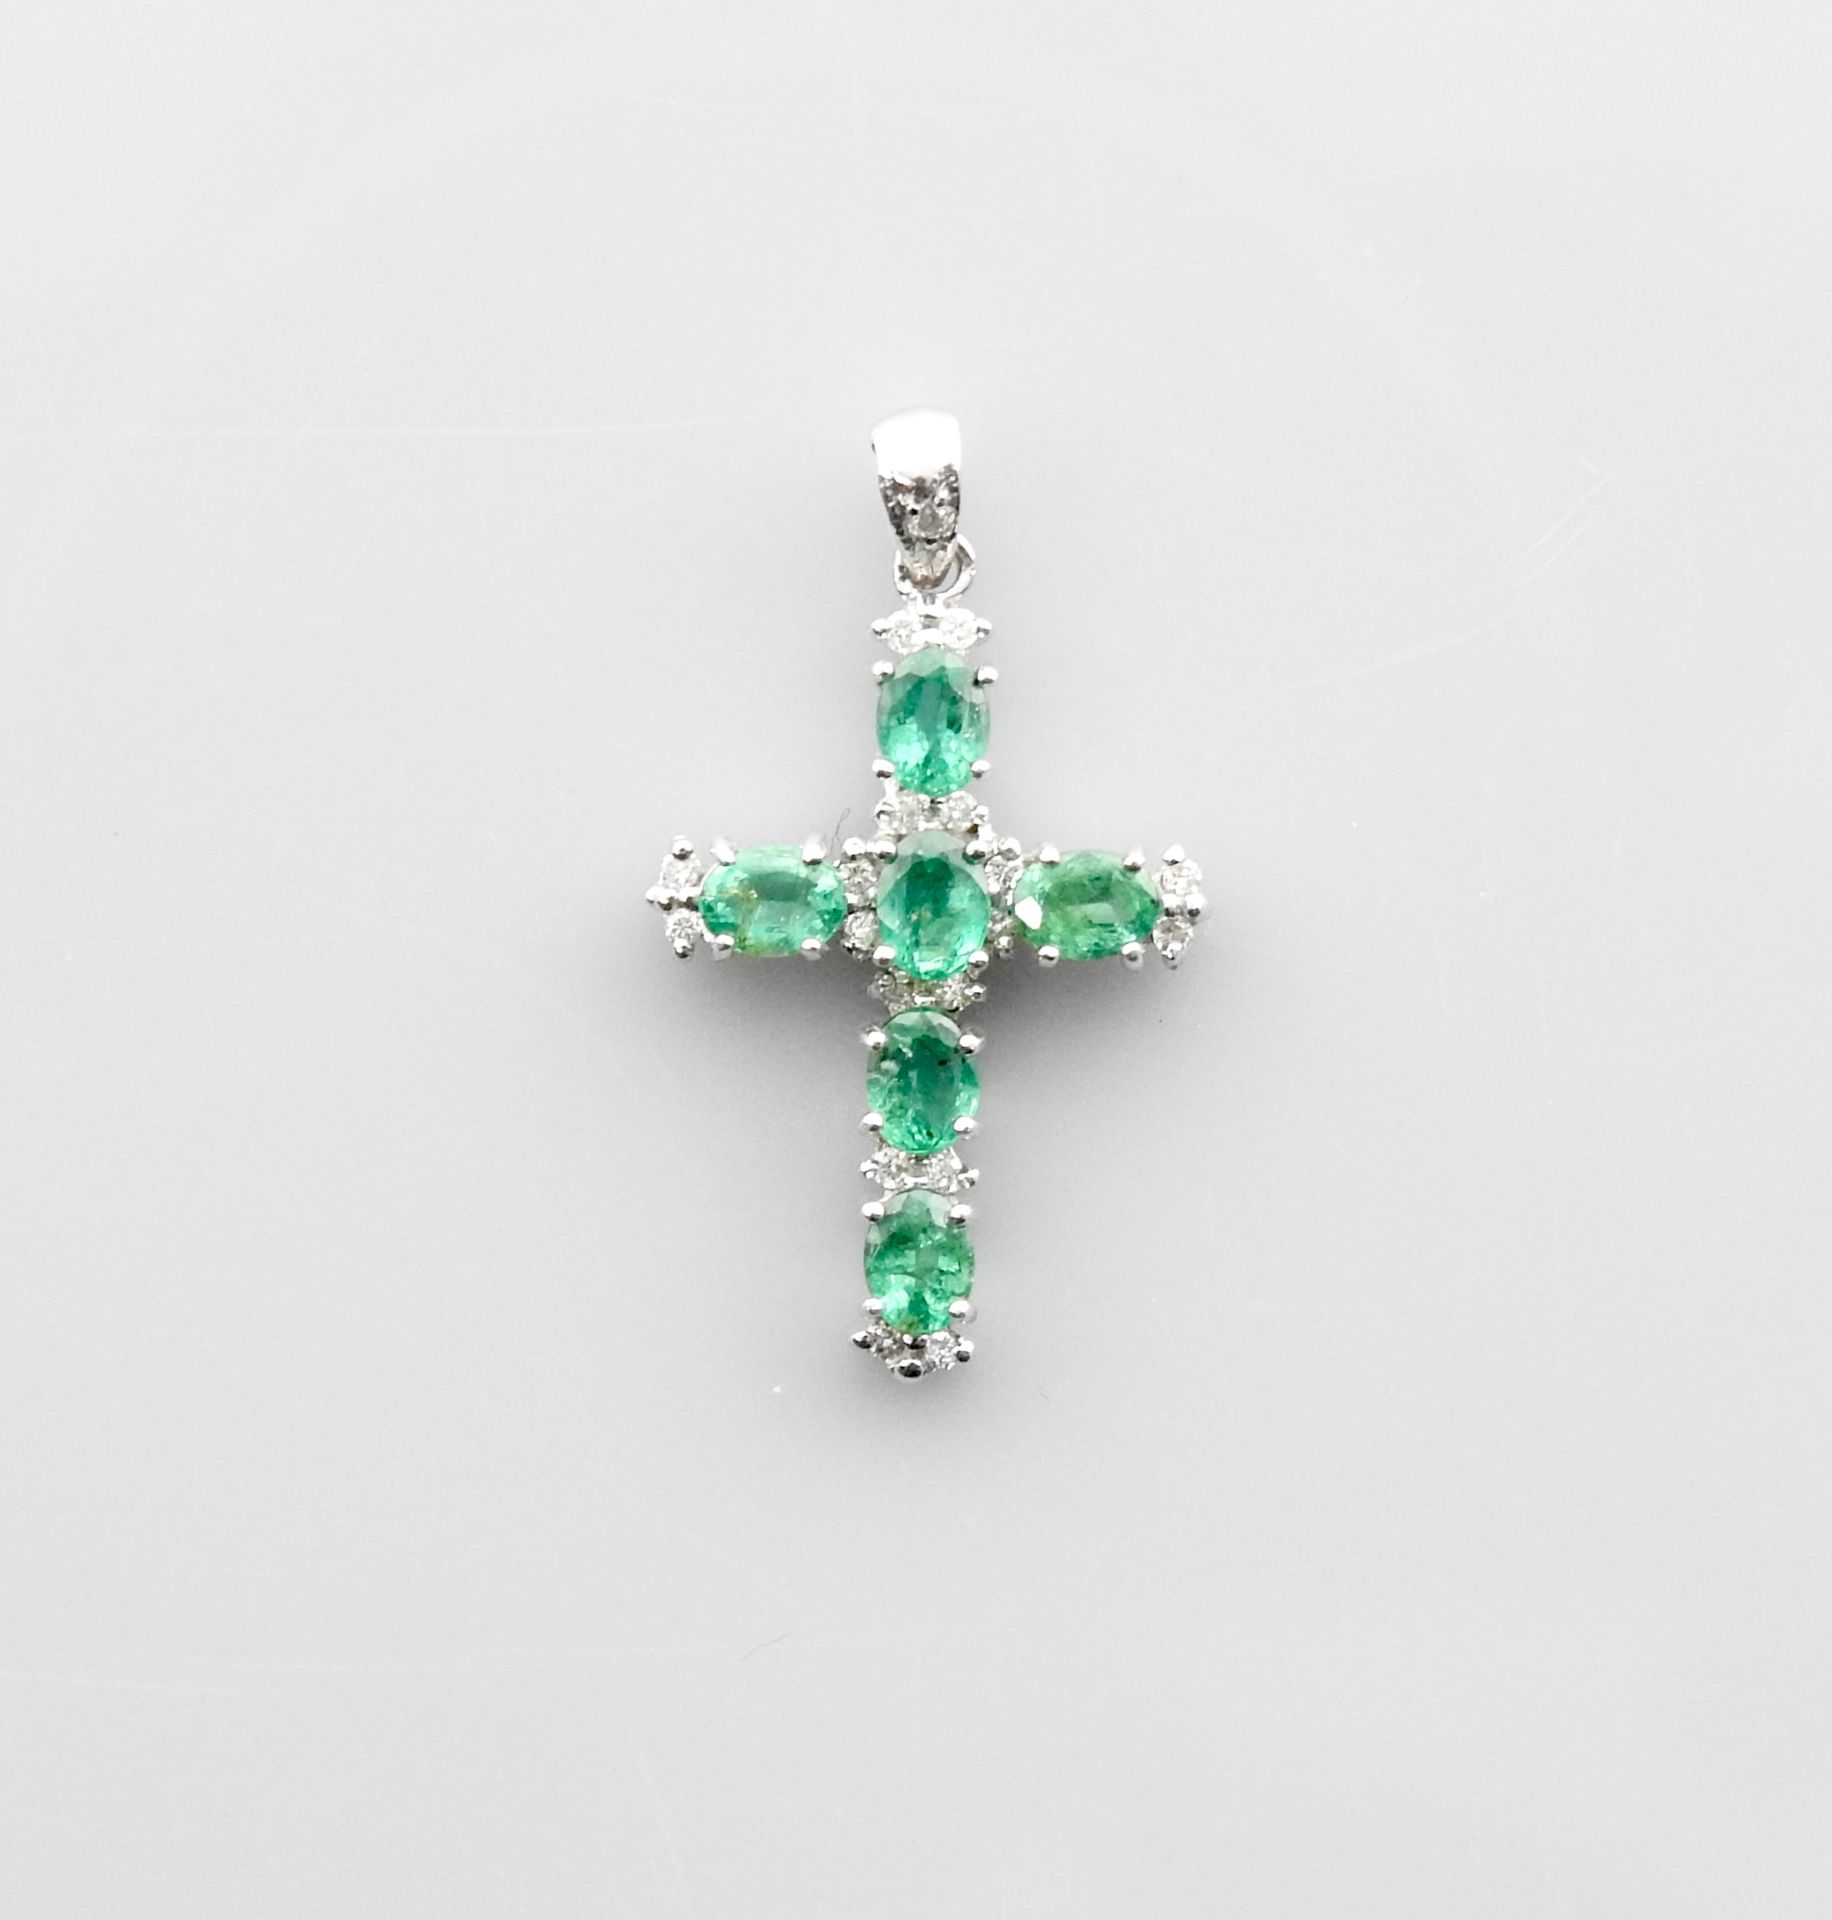 Null 小白金十字架，750毫米，镶有总重约2克拉的祖母绿和一颗钻石，尺寸为3 x 1.5厘米，重量：2.1克毛重。